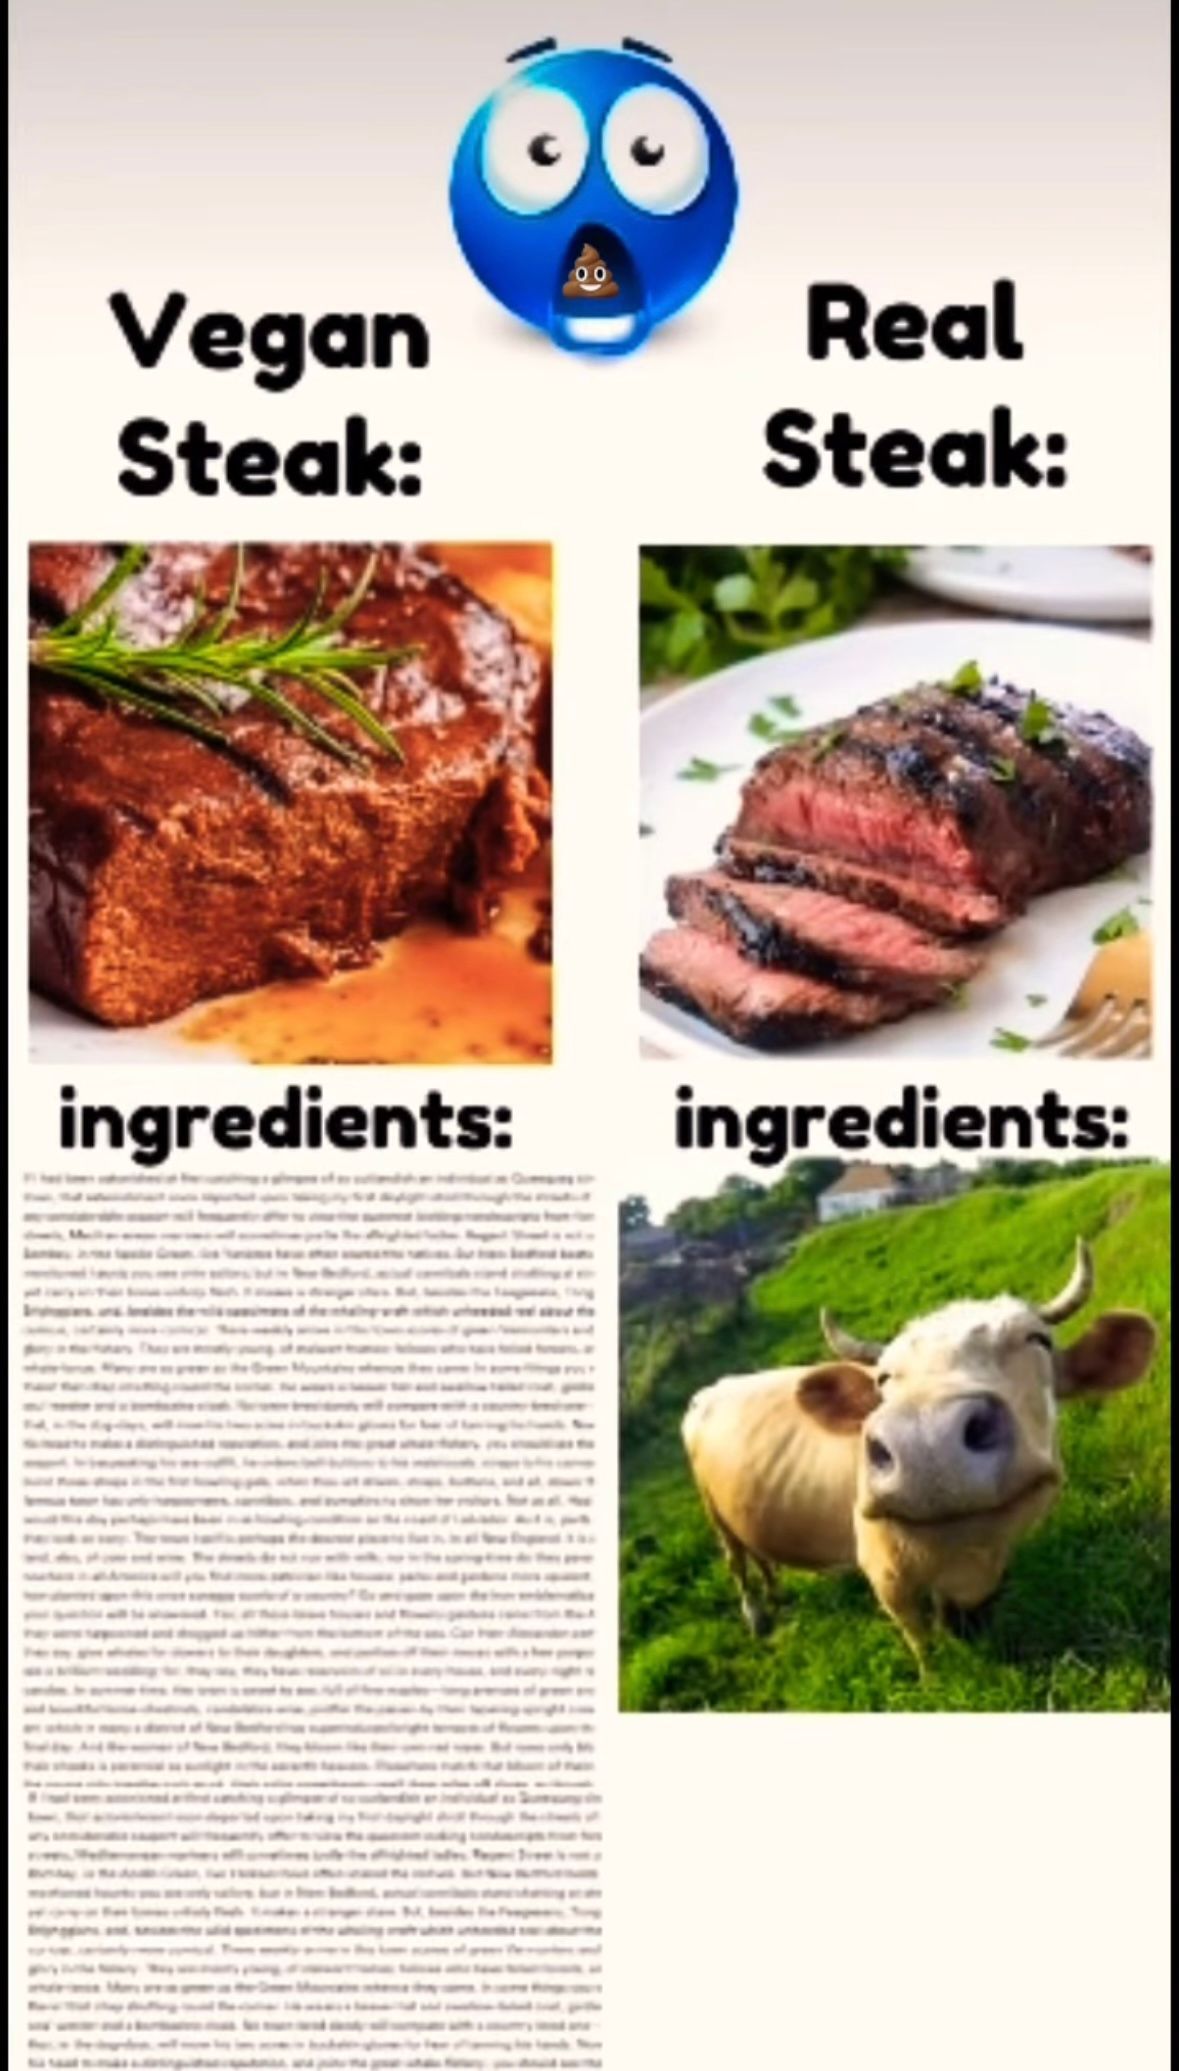 Vegan
Steak:
Real
Steak:
ingredients:
ingredients: